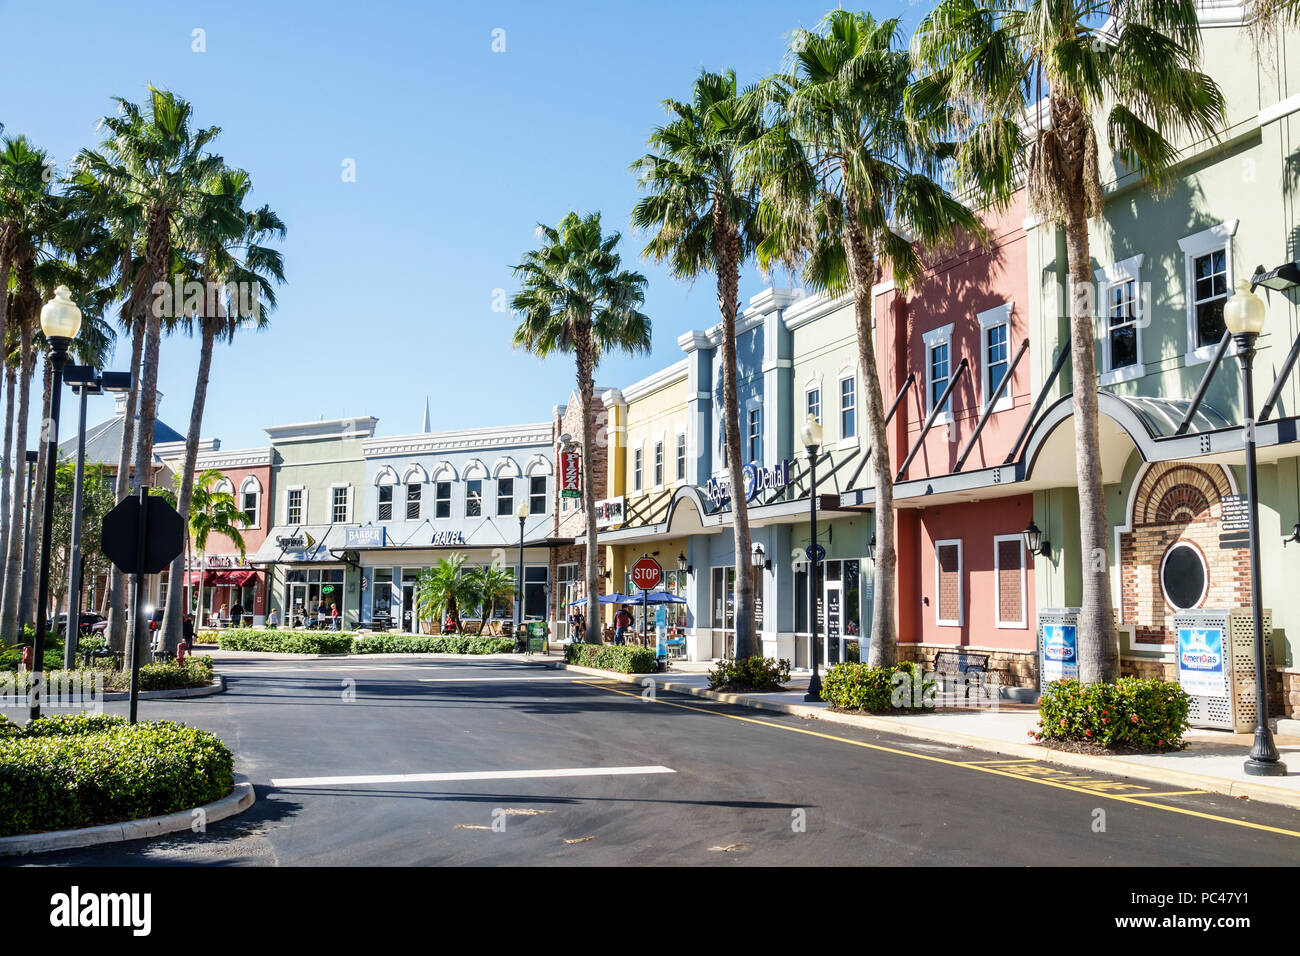 Port St. Saint Lucie Florida, tradizione, shopping center strip, negozi, esterno, parcheggio auto strada, palme Sabal, FL171212007 Foto Stock